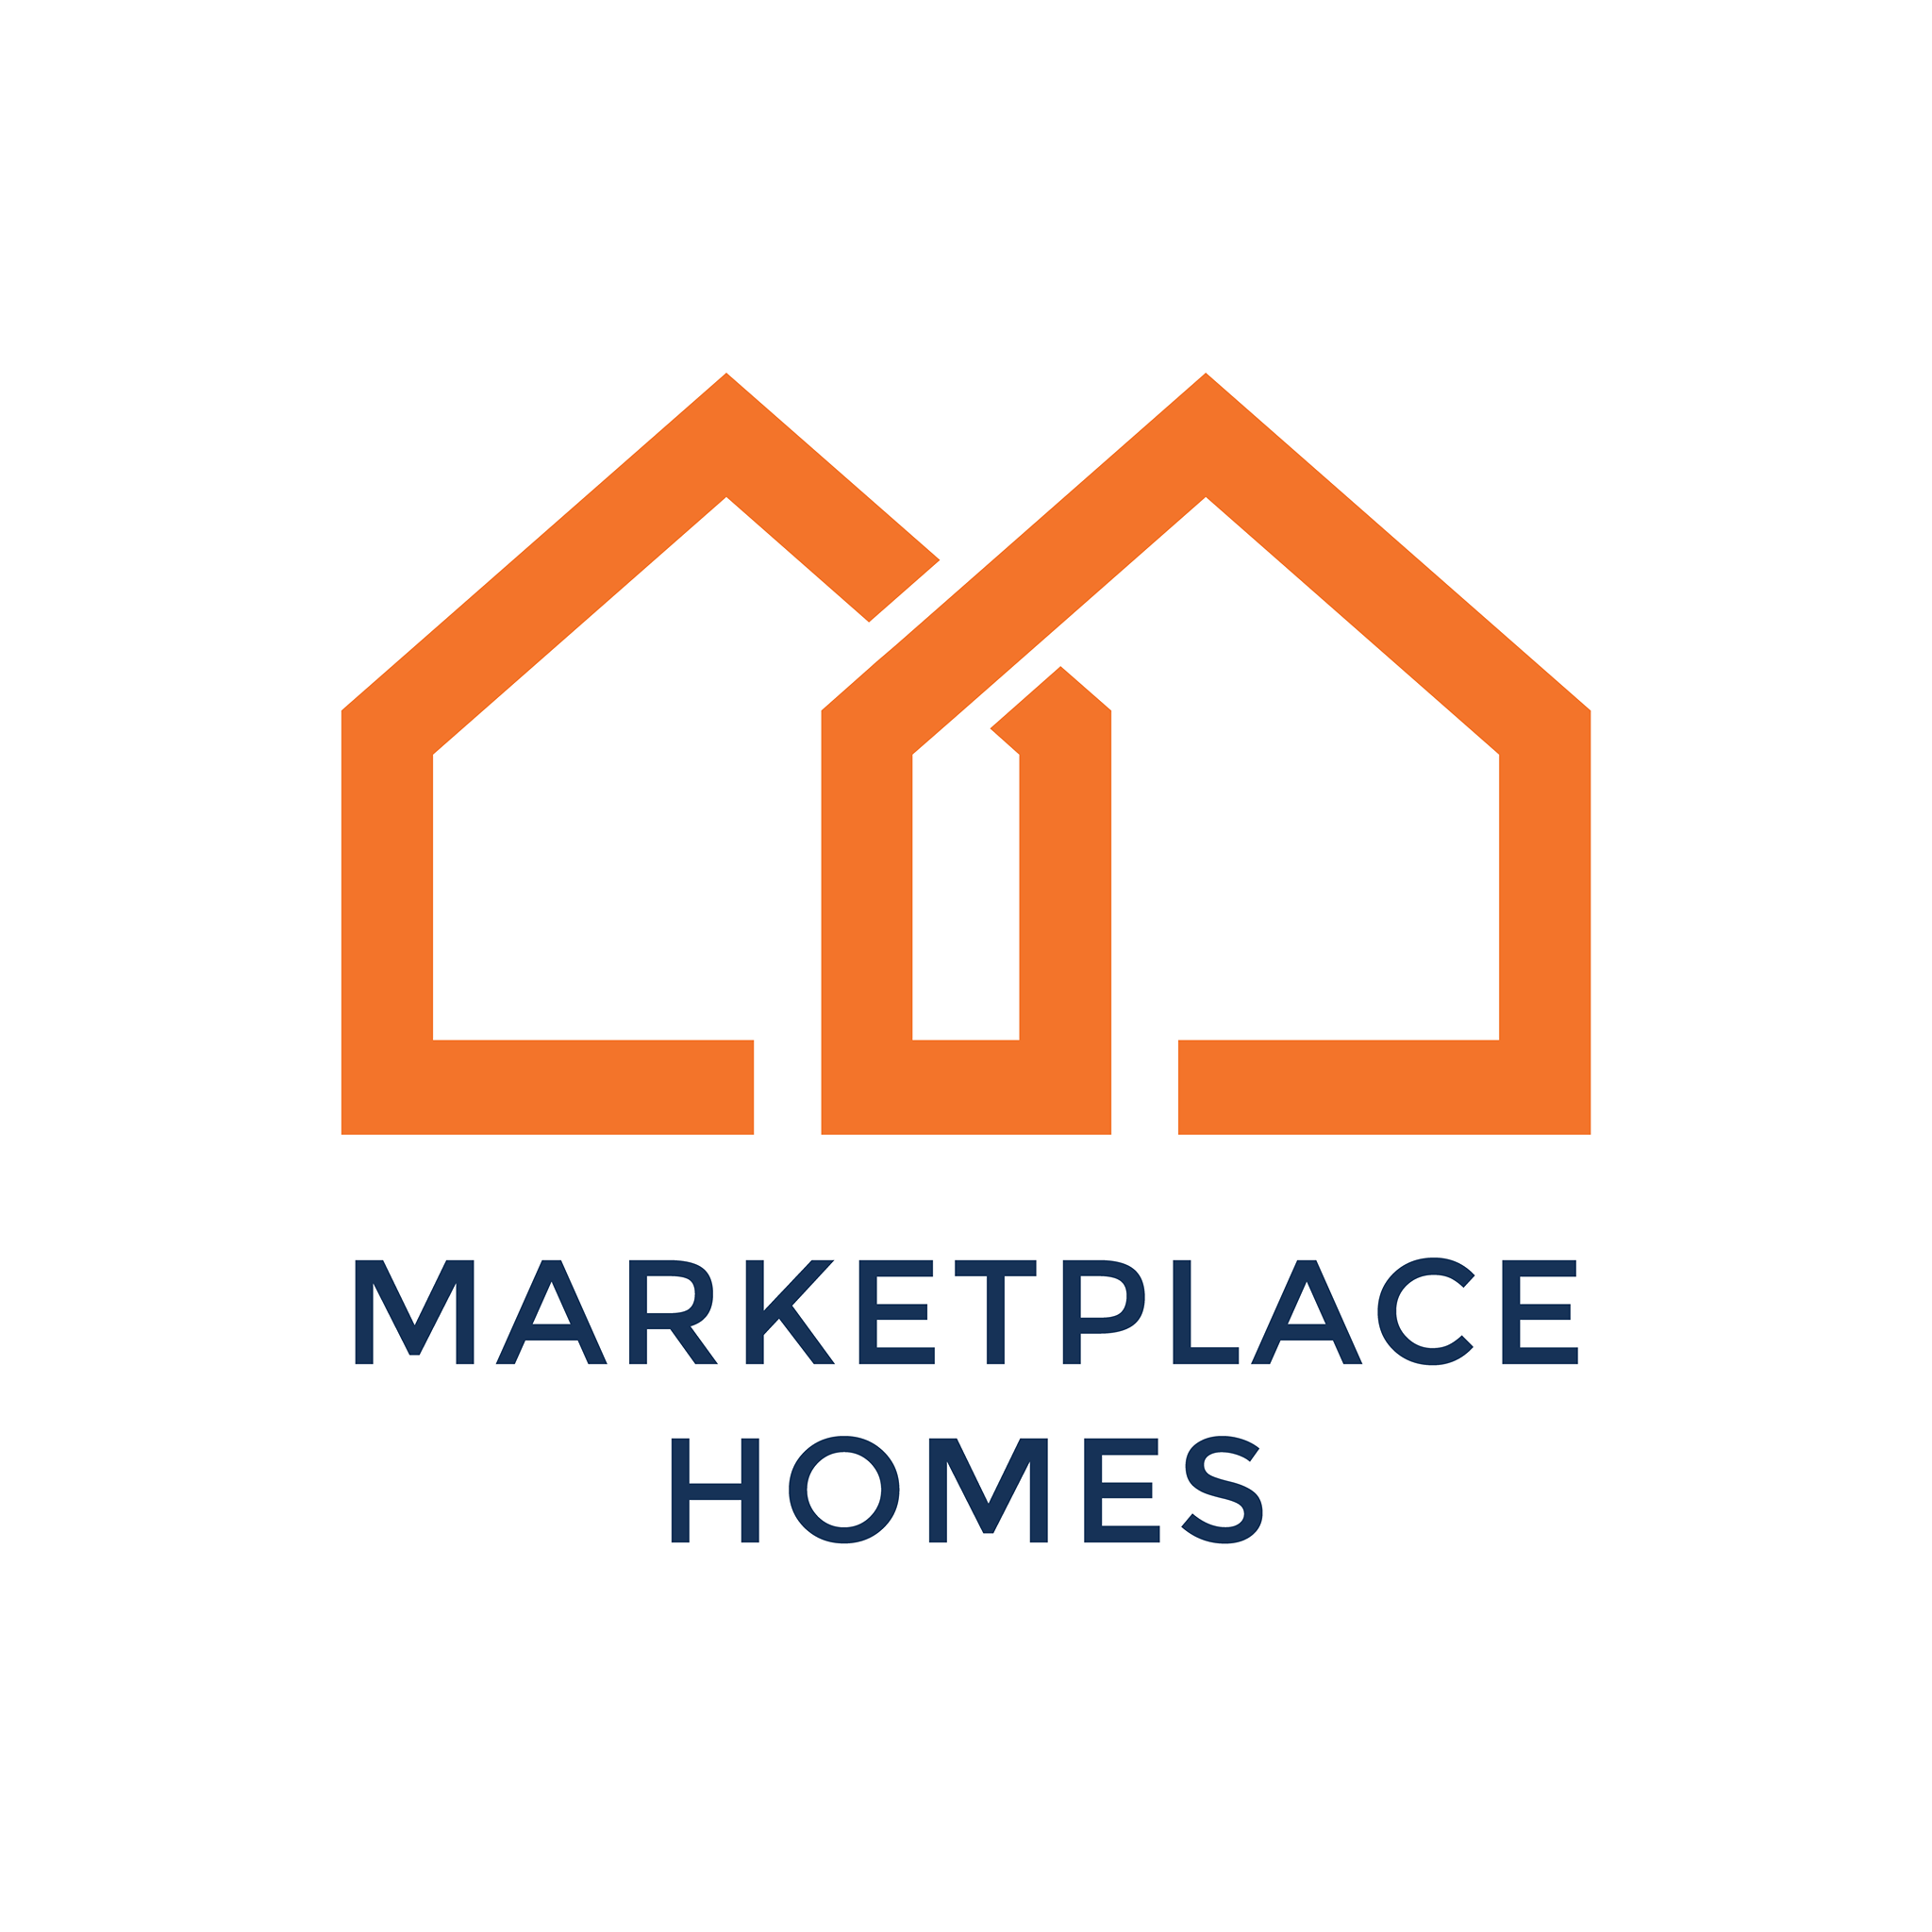 Marketplace Homes - Ohio logo